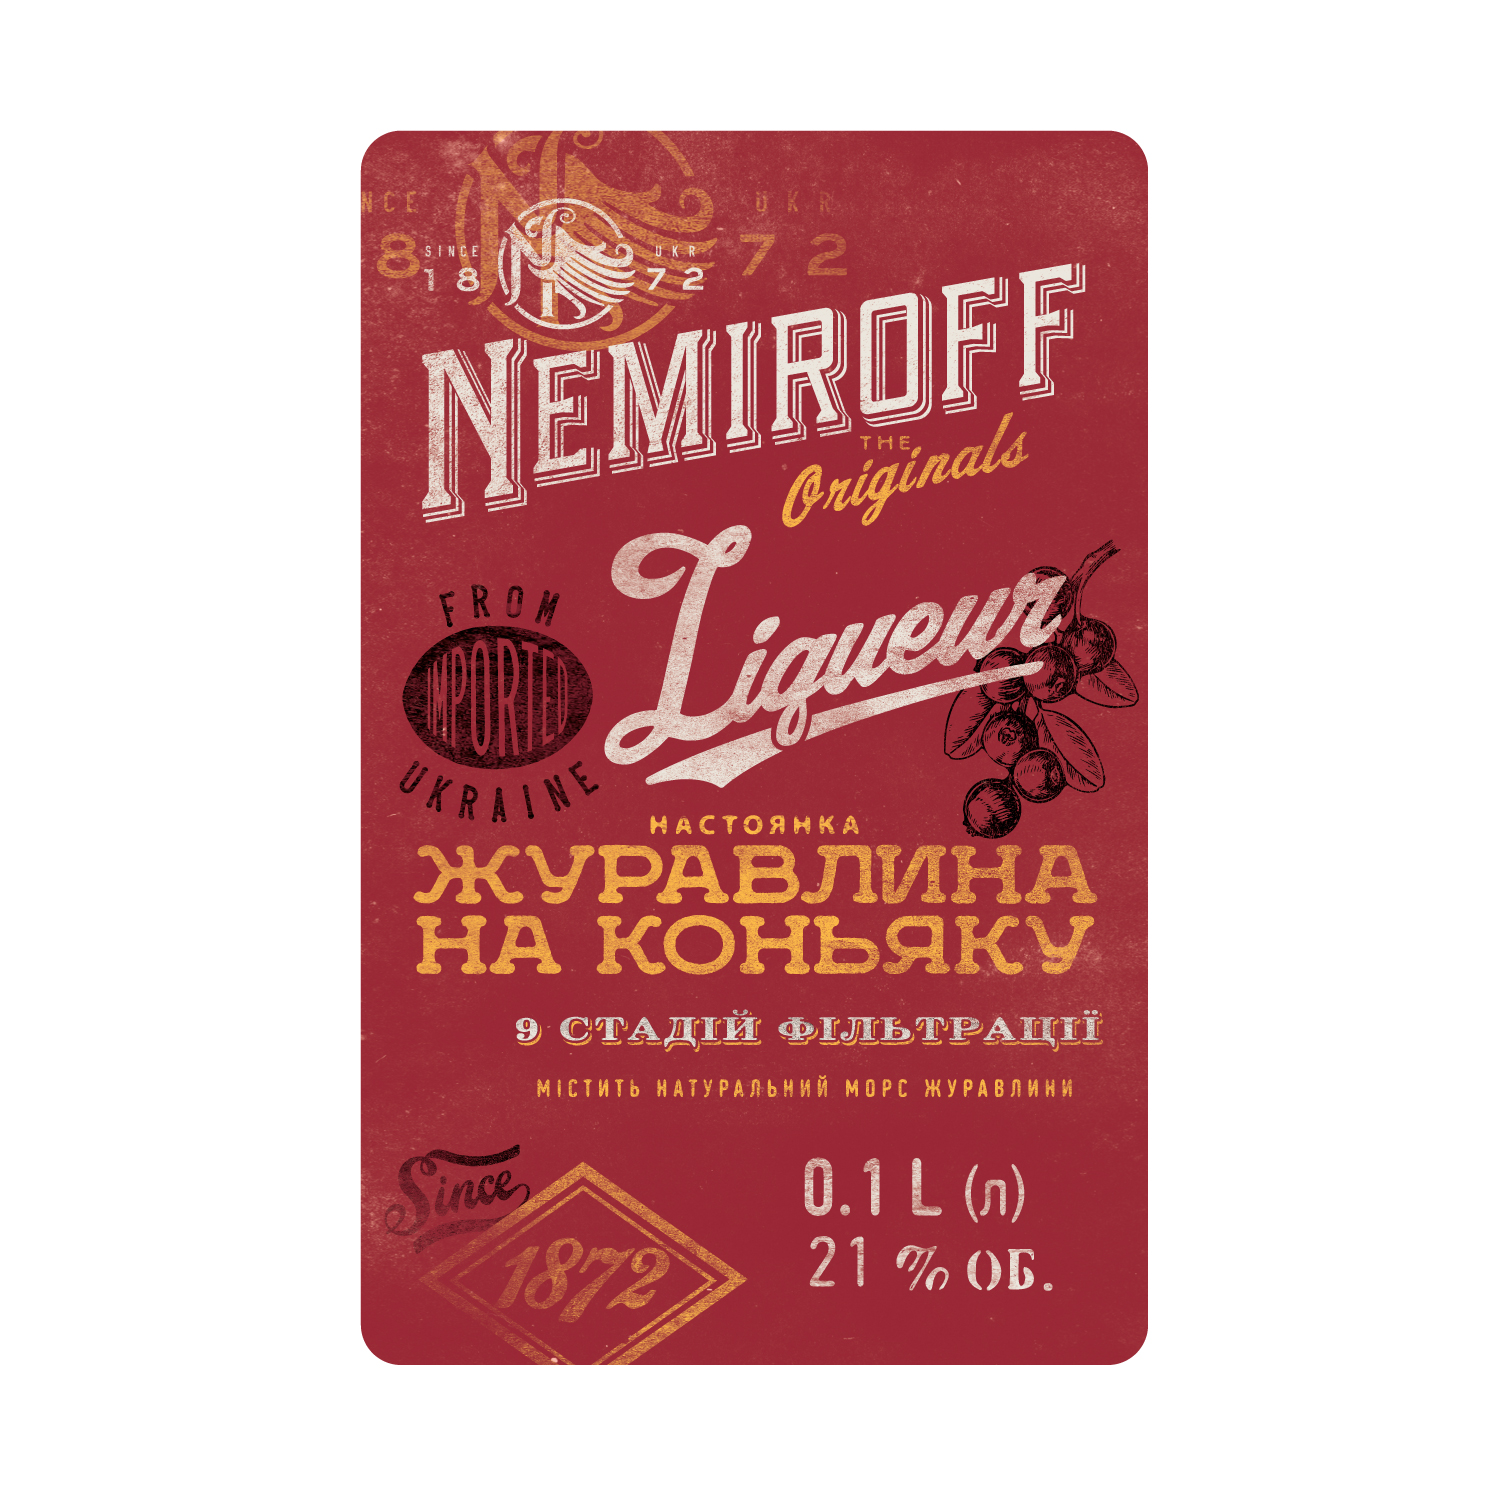 Настоянка Nemiroff Originals Журавлина на коньяку 21% 0.1 л - фото 4